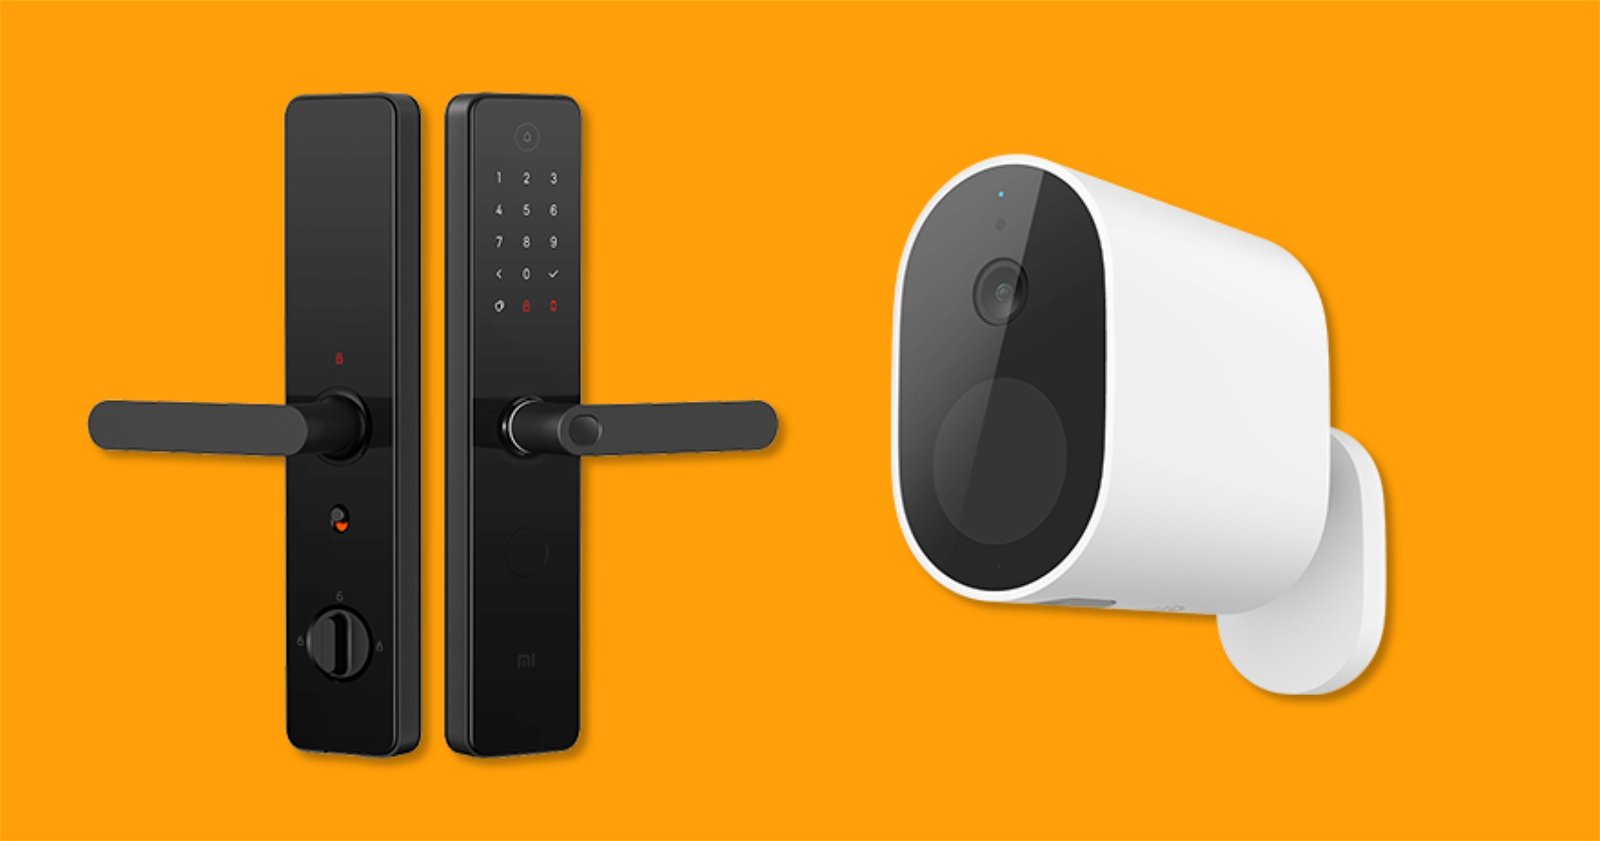 Cámara y cerradura: Xiaomi lanza un kit inteligente a prueba de ladrones